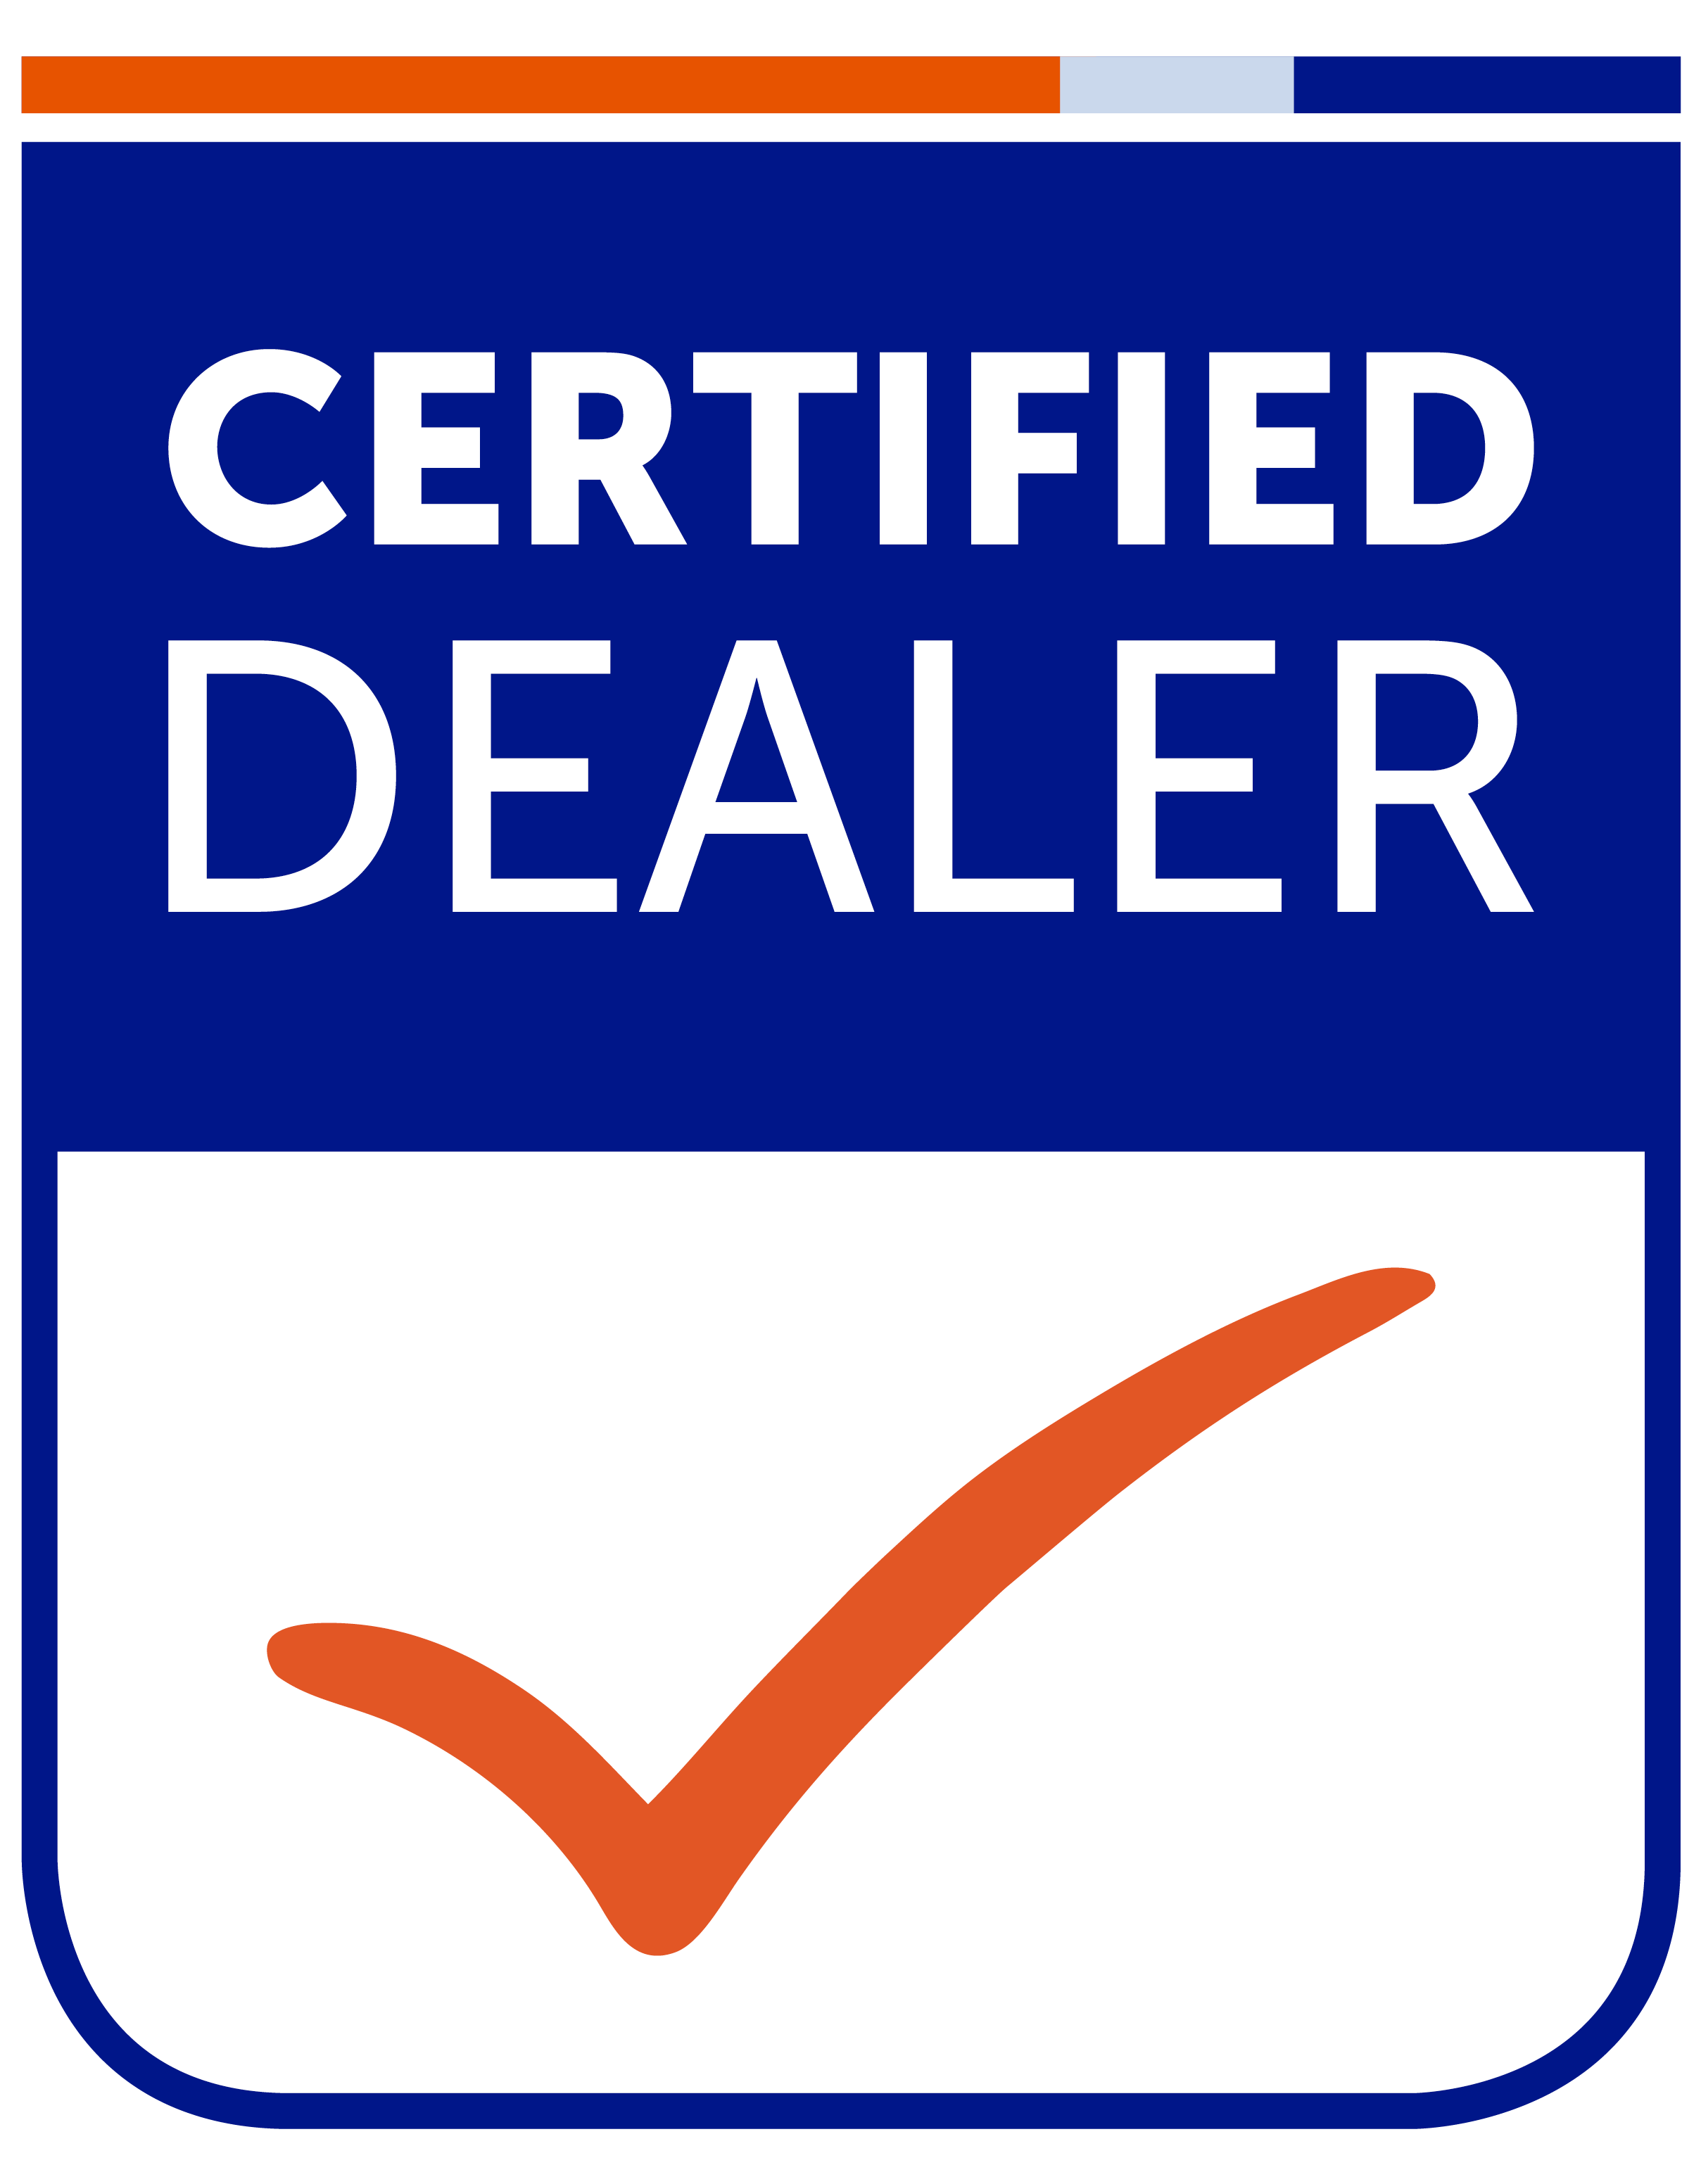 certified dealer, voted png #39491